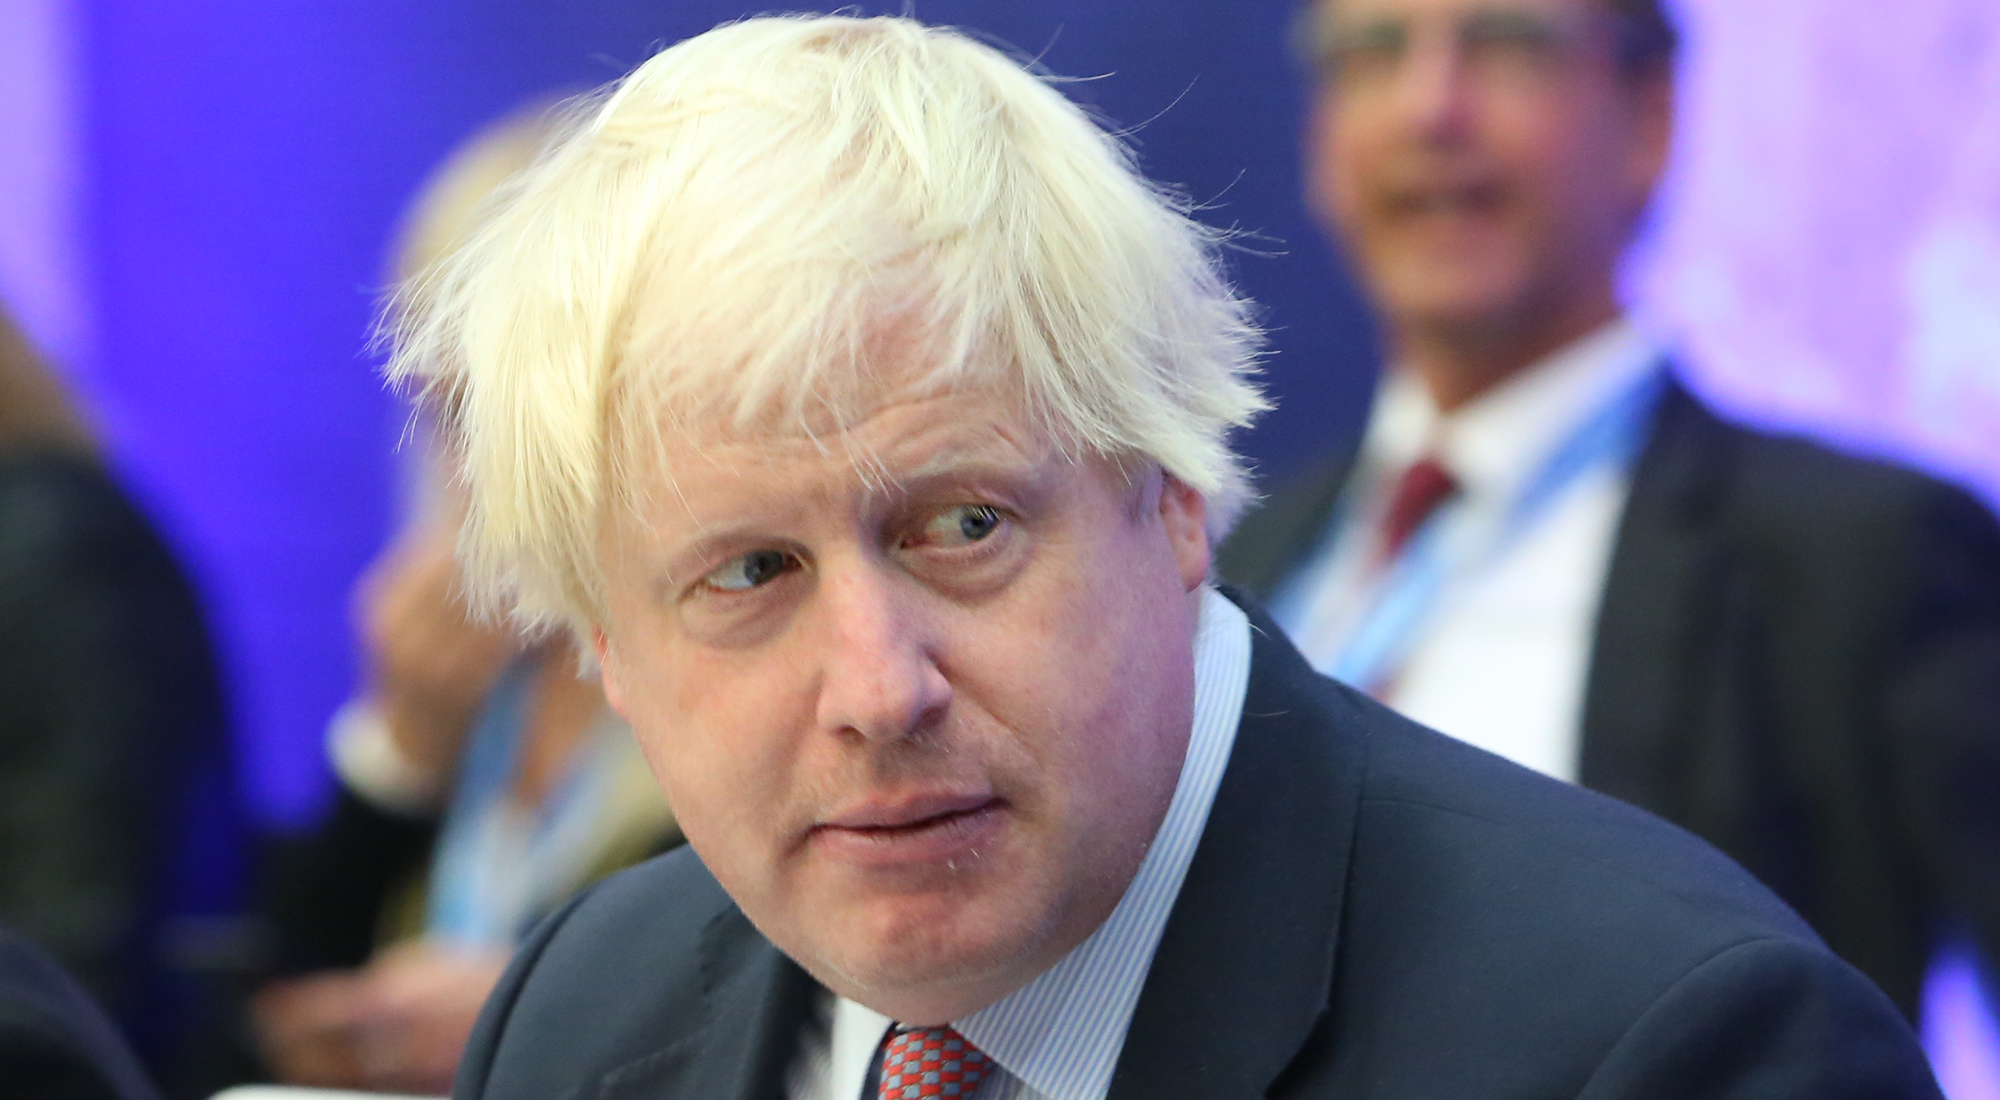 Ní chabhróidh an margadh prótacail leis an Ríocht Aontaithe ‘smacht a fháil ar ais’ – Boris Johnson